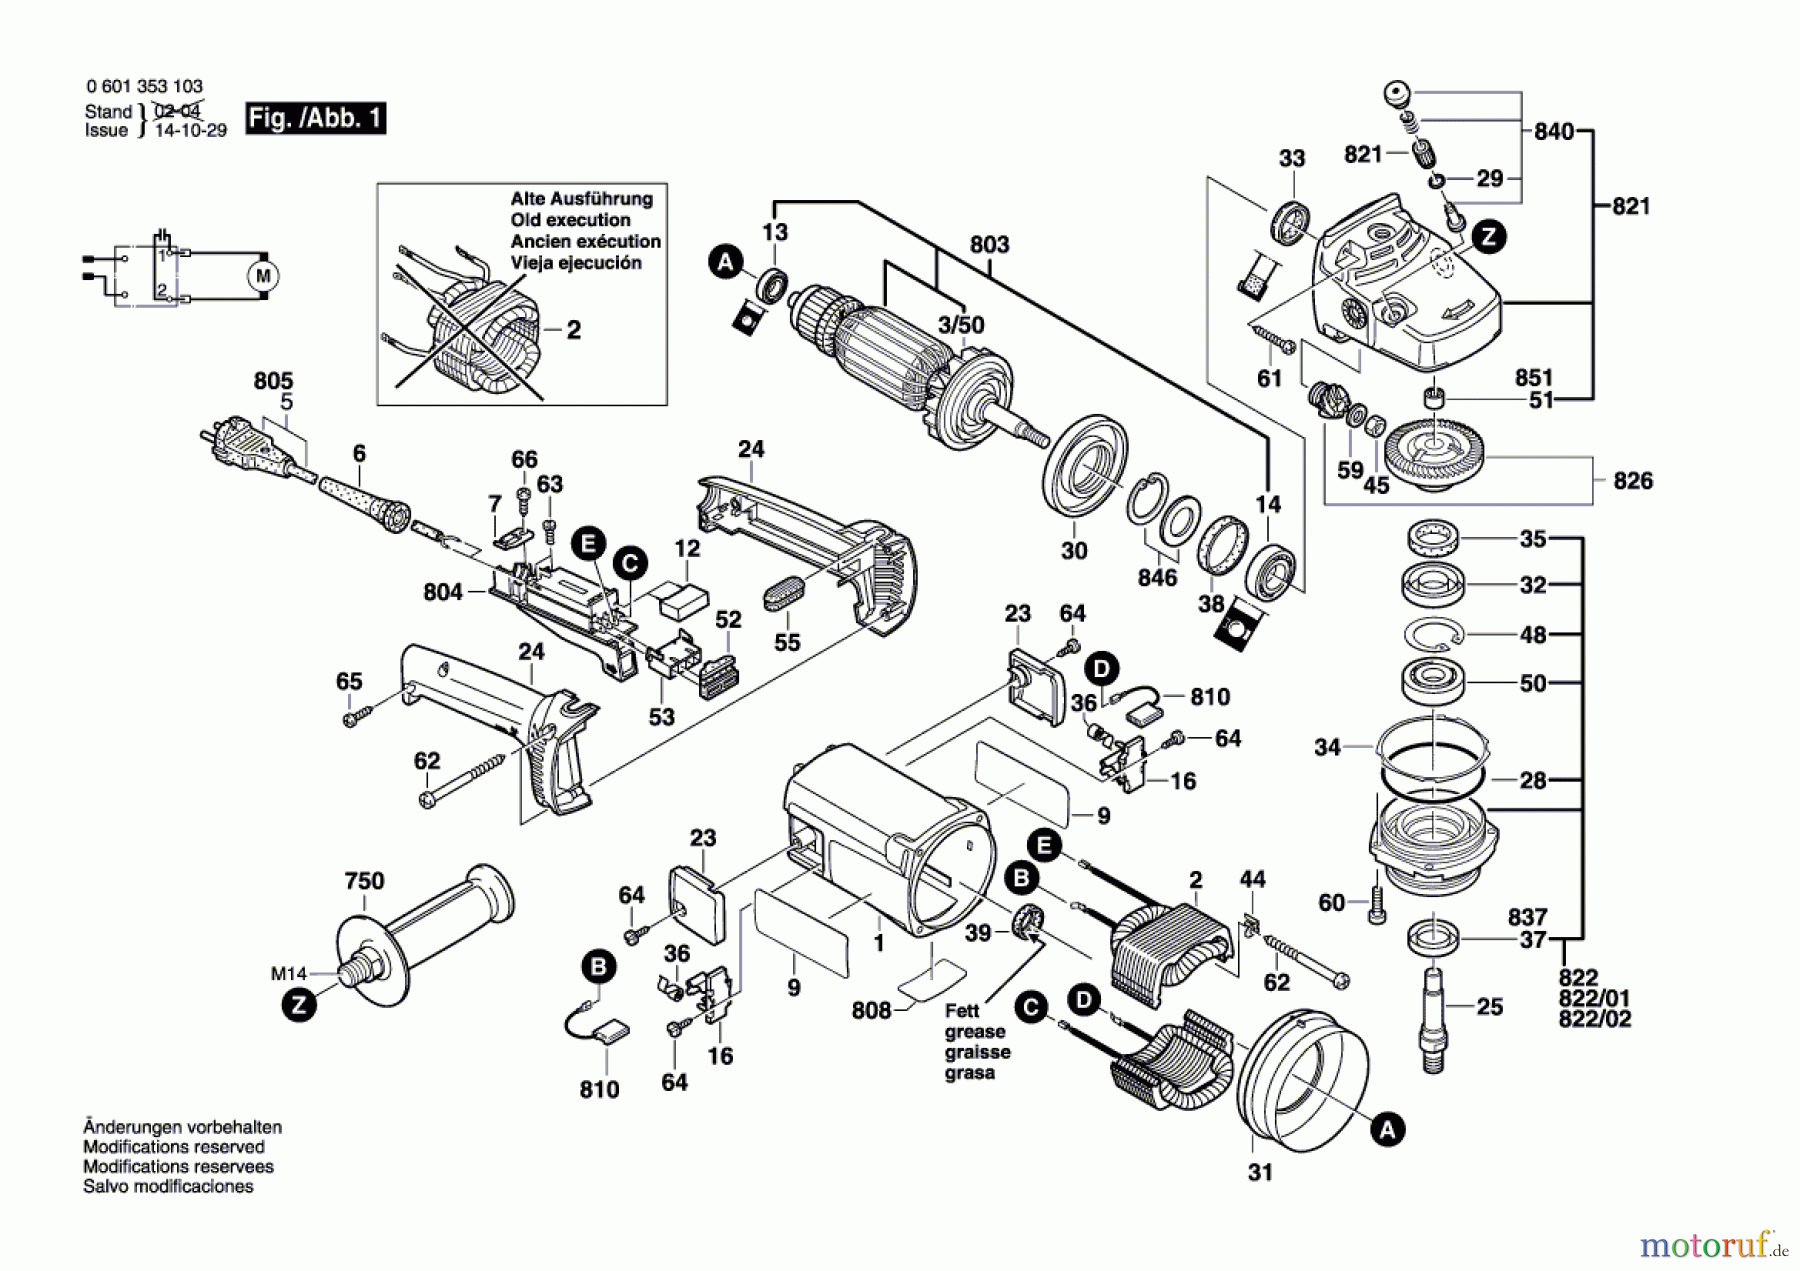  Bosch Werkzeug Winkelschleifer GWS 21 U Seite 1